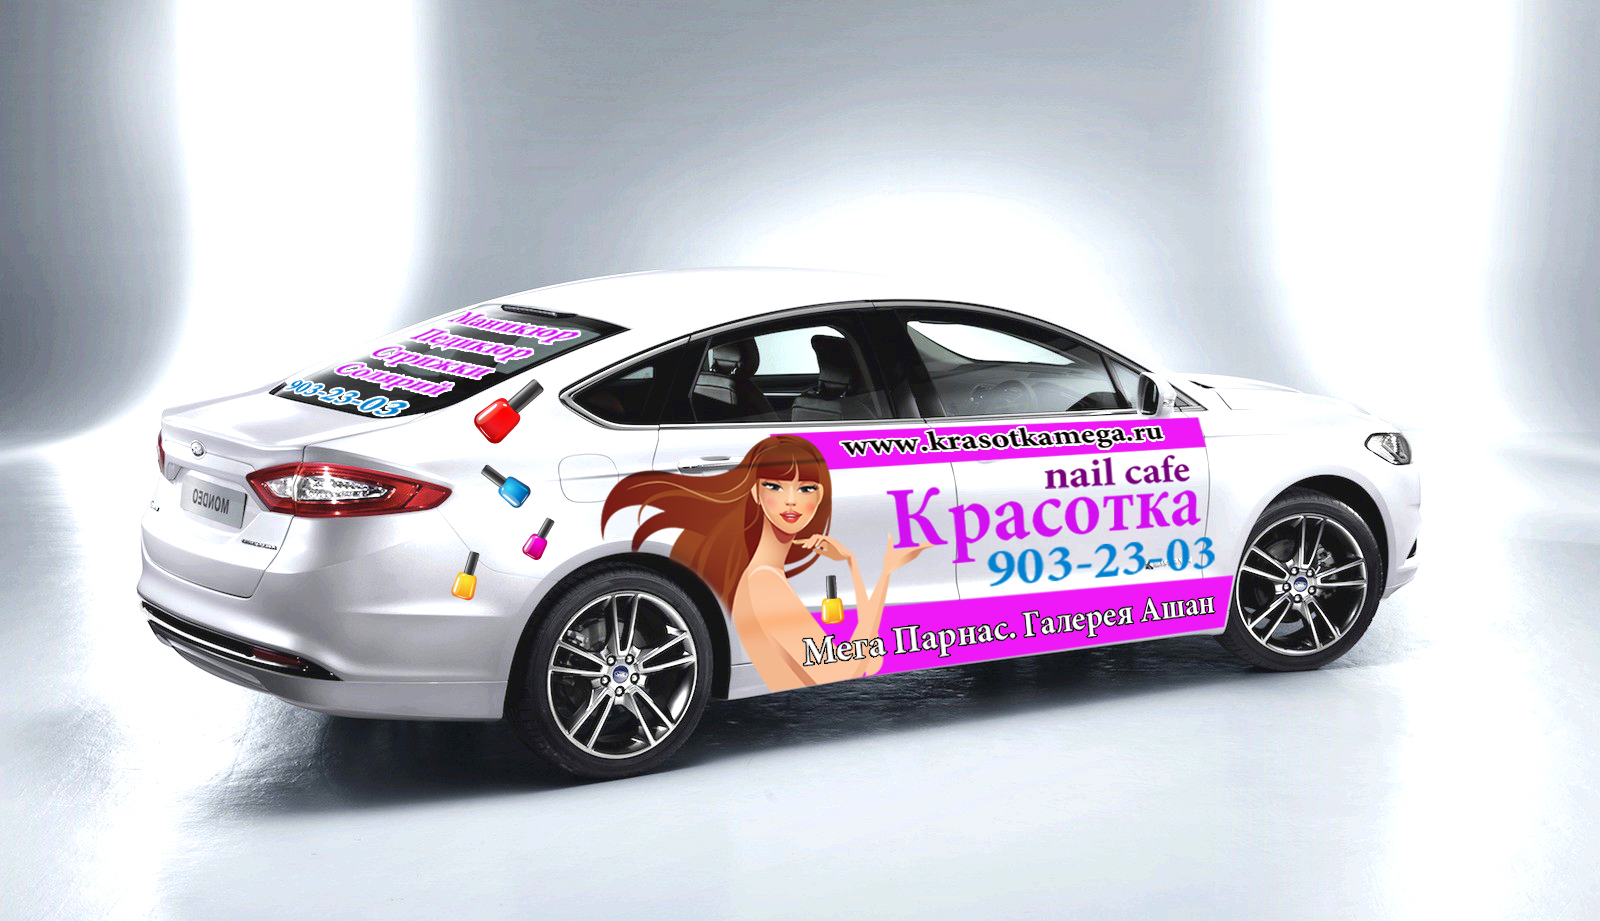 Beauty Center Car Advertisement